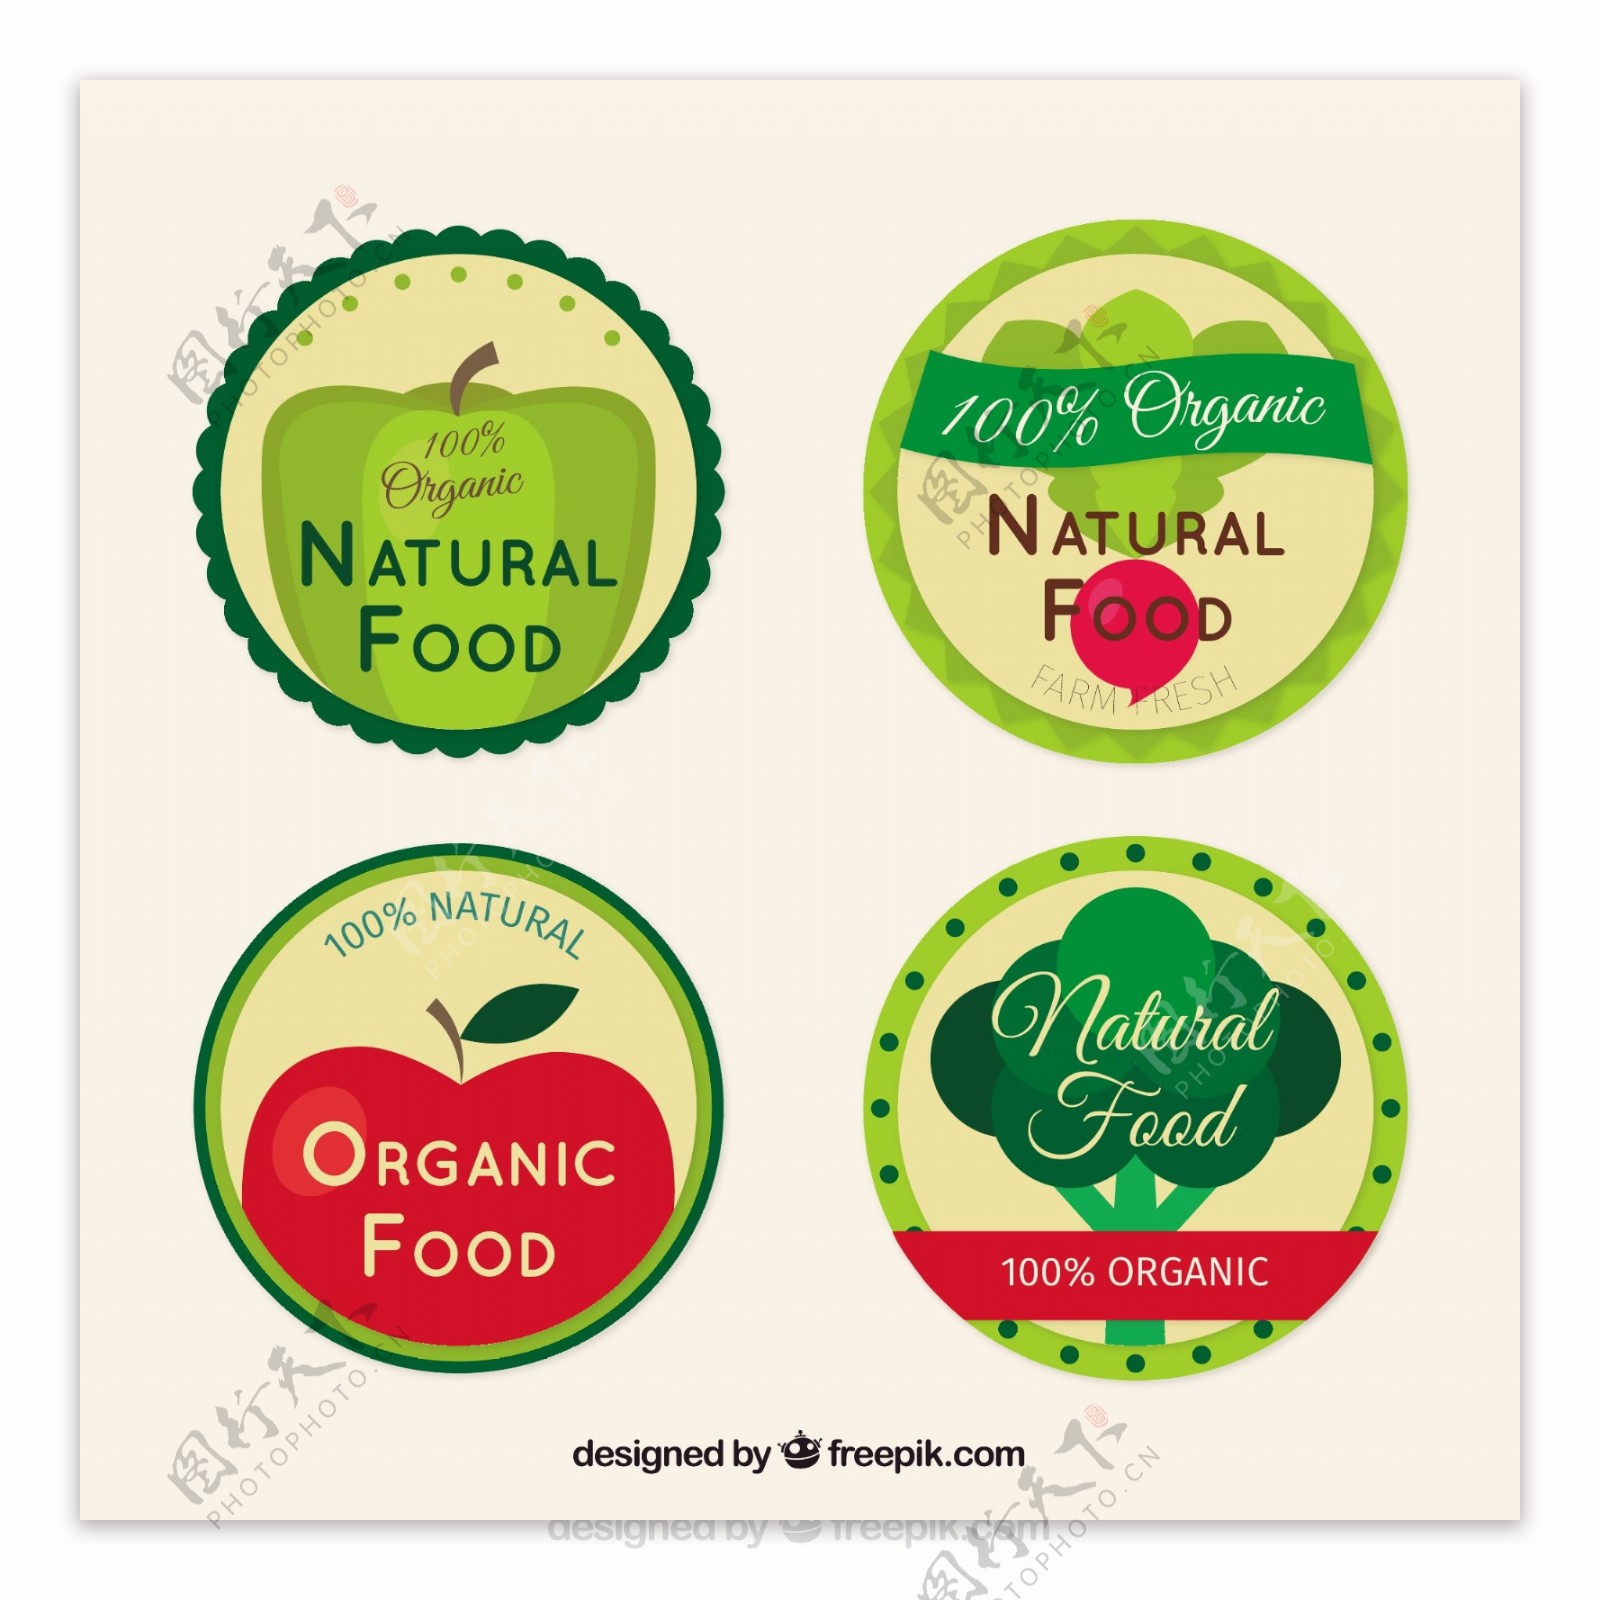 四种圆形扁平风格有机食品的标签